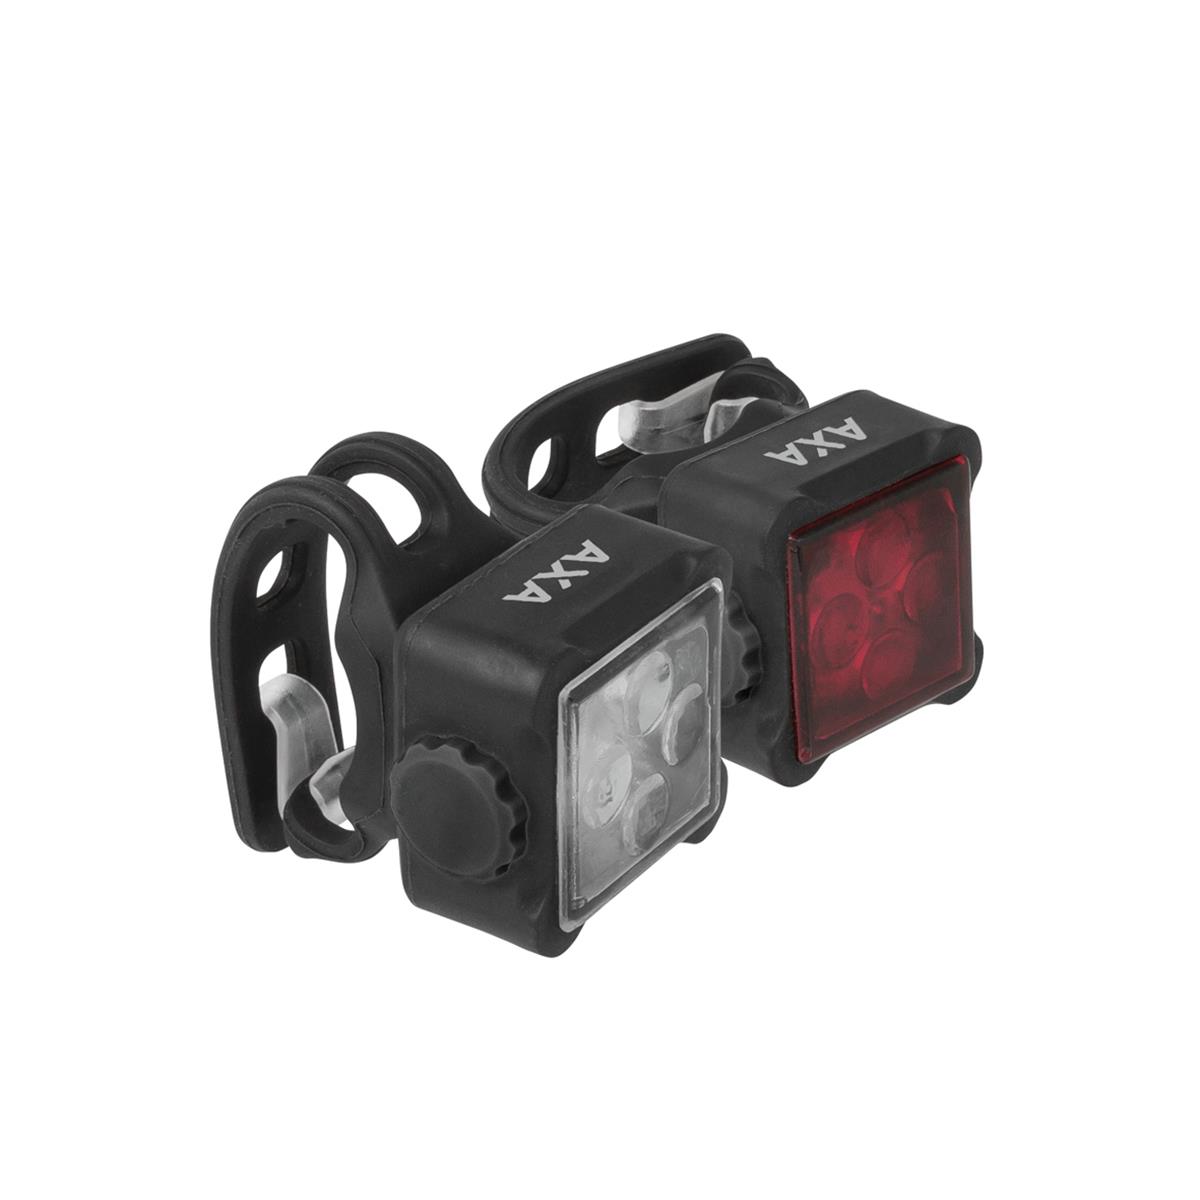 Kit Niteline 44-R luz dianteira e traseira USB